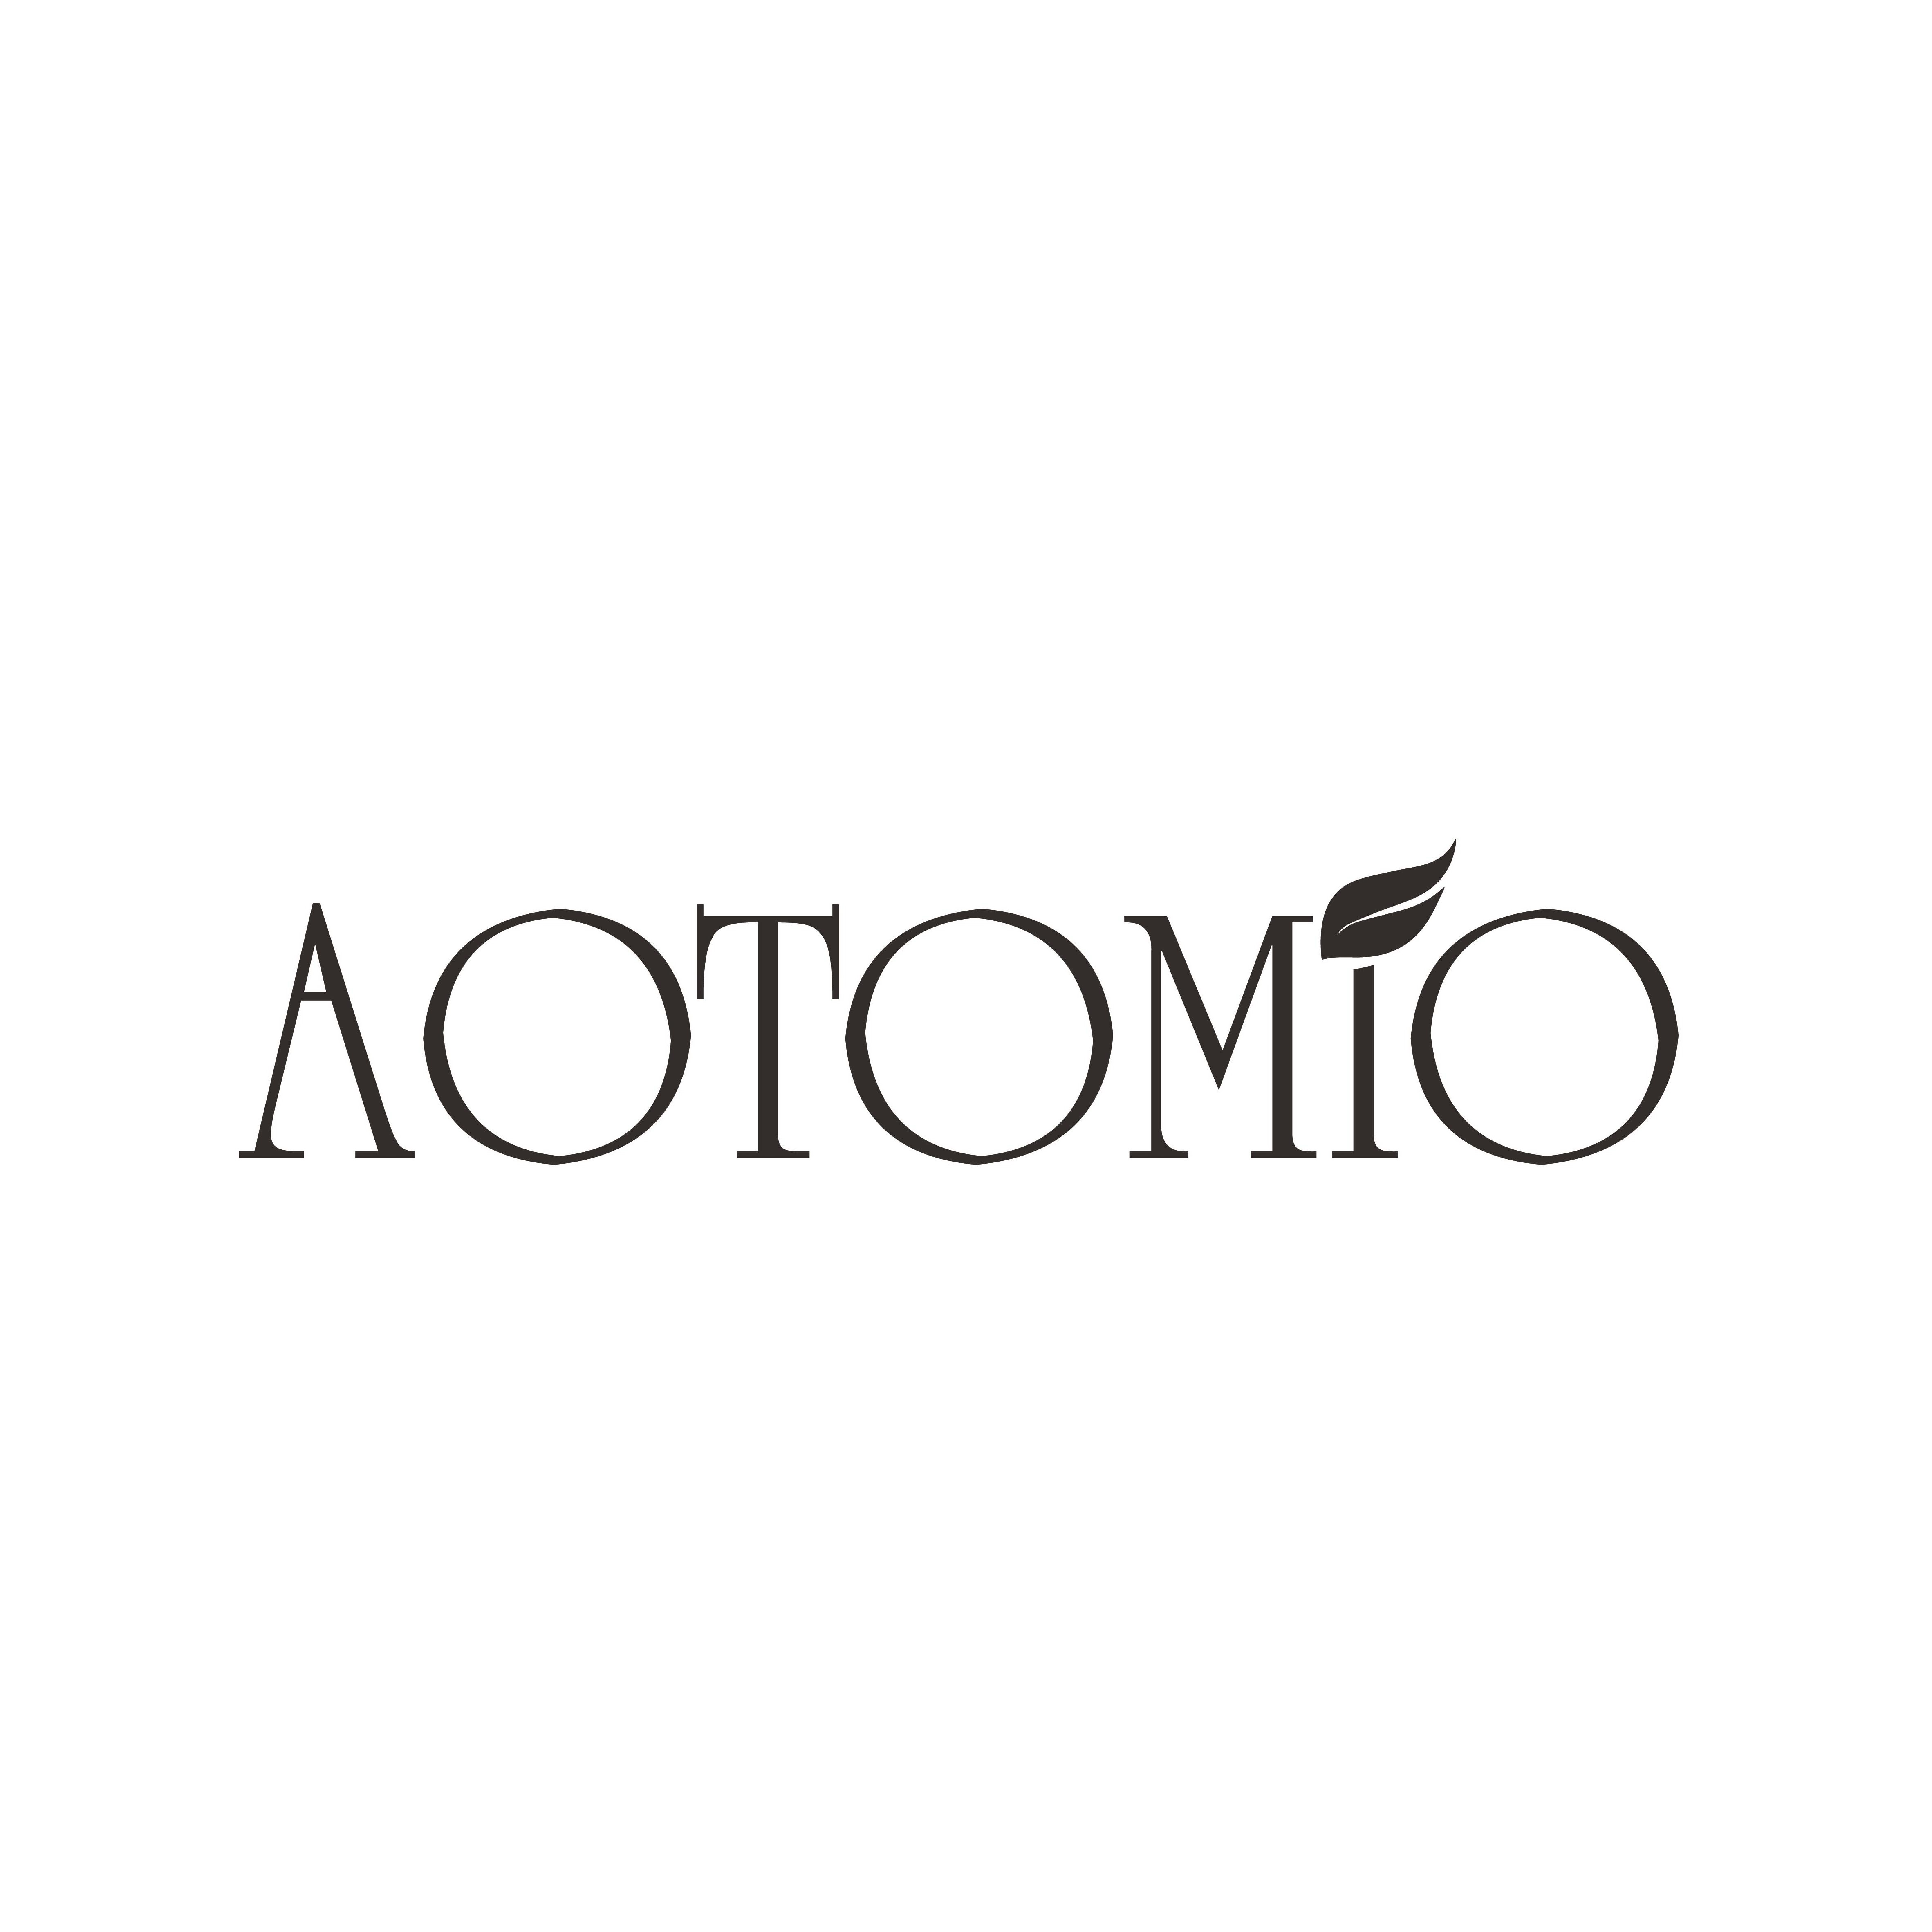 Trademark Logo AOTOMIO